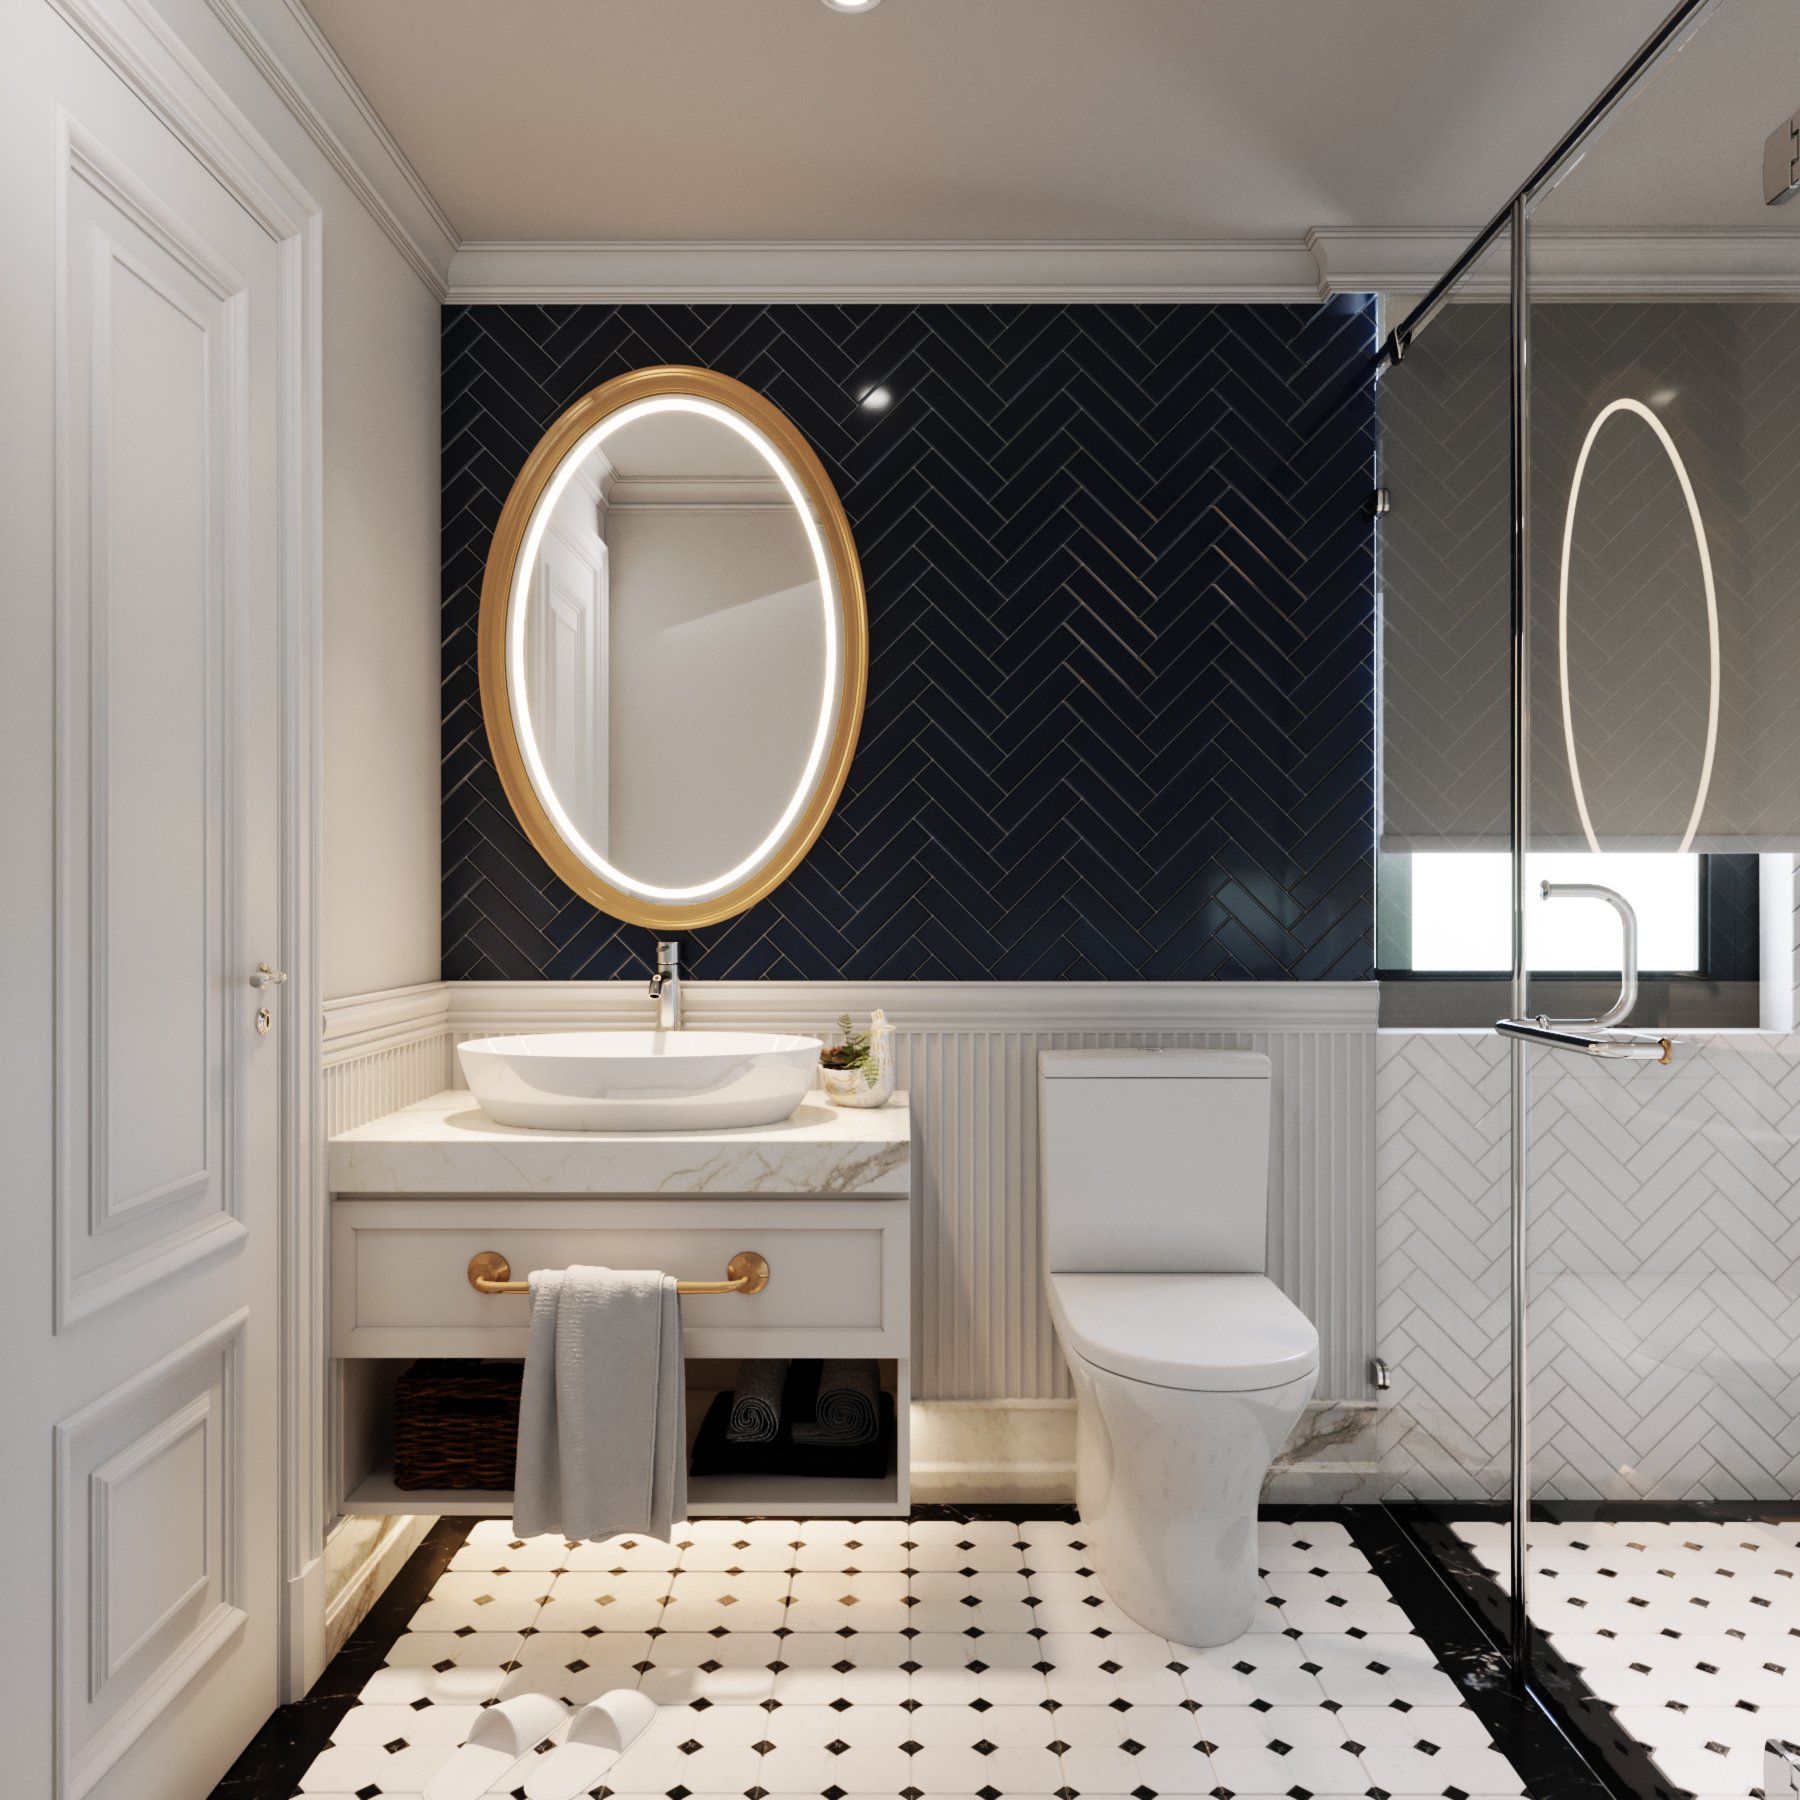 Phòng tắm, phong cách tân cổ điển Neo Classic, thiết kế concept nội thất, nhà phố Verosa Park Khang Điền